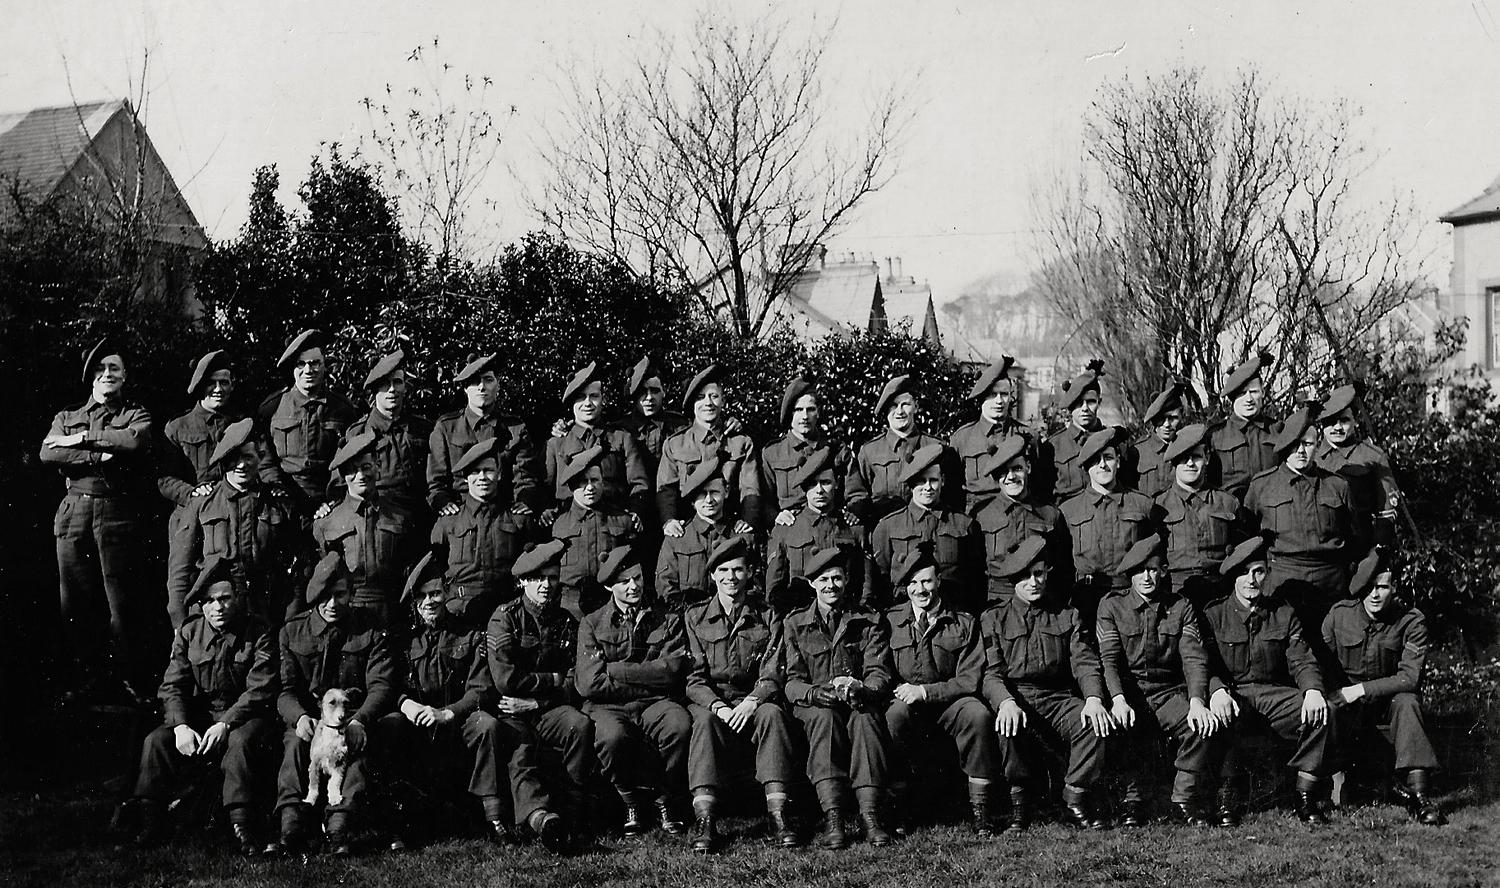 No.9 Commando troop at Criccieth circa 1941